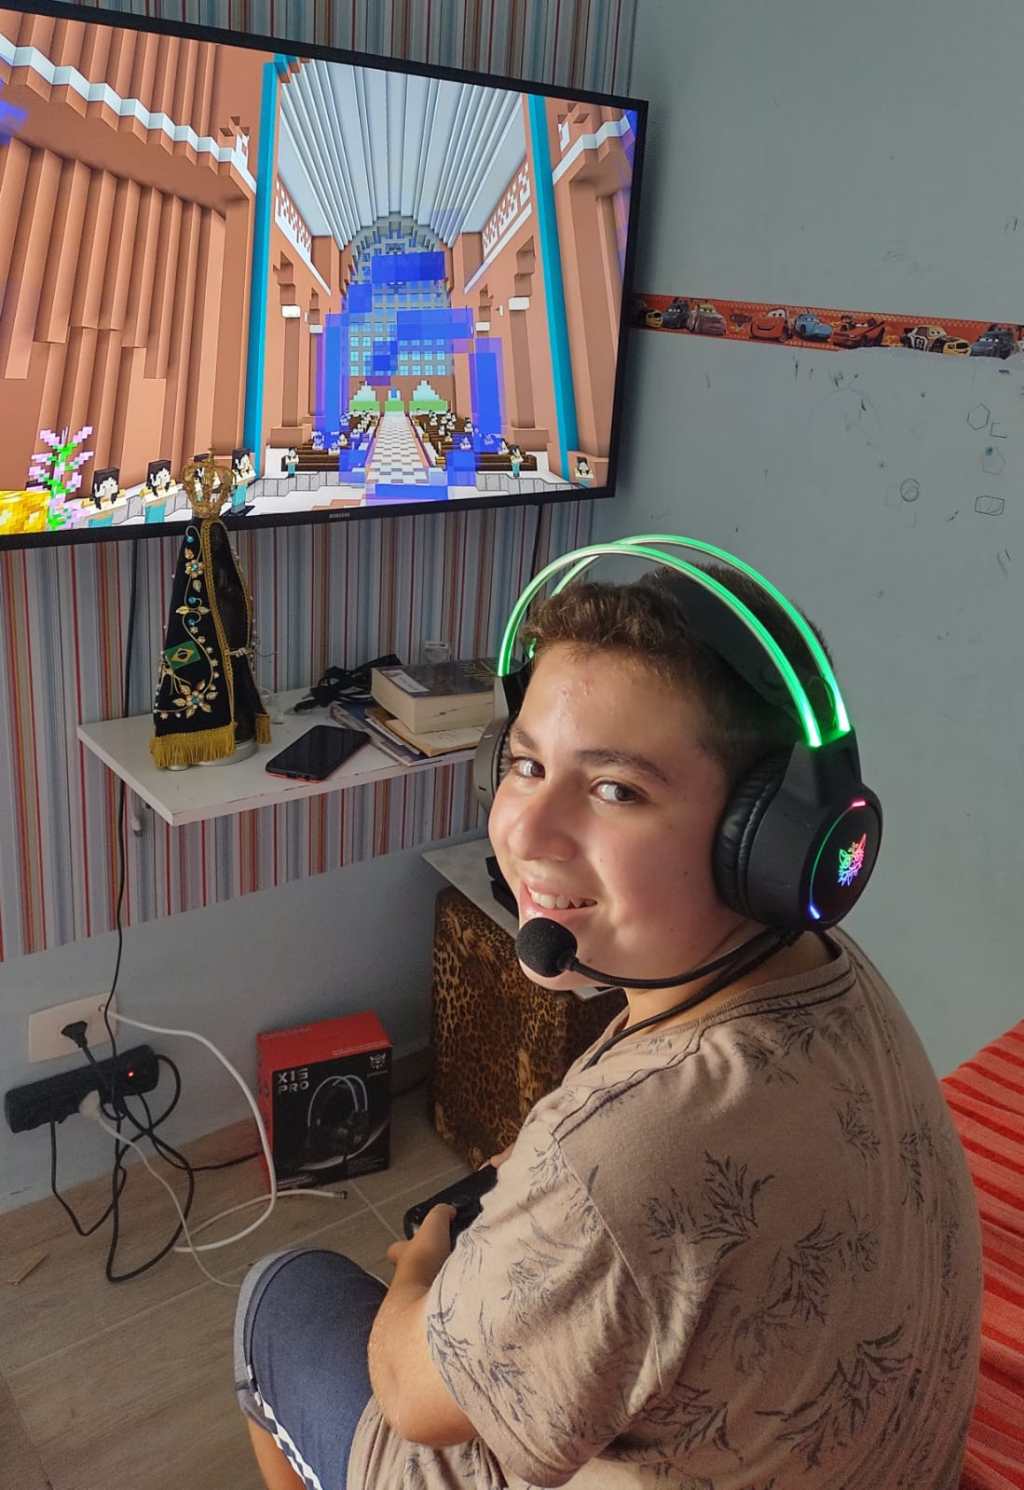 Brasileiro de 10 anos constrói Santuário de Aparecida no Minecraft